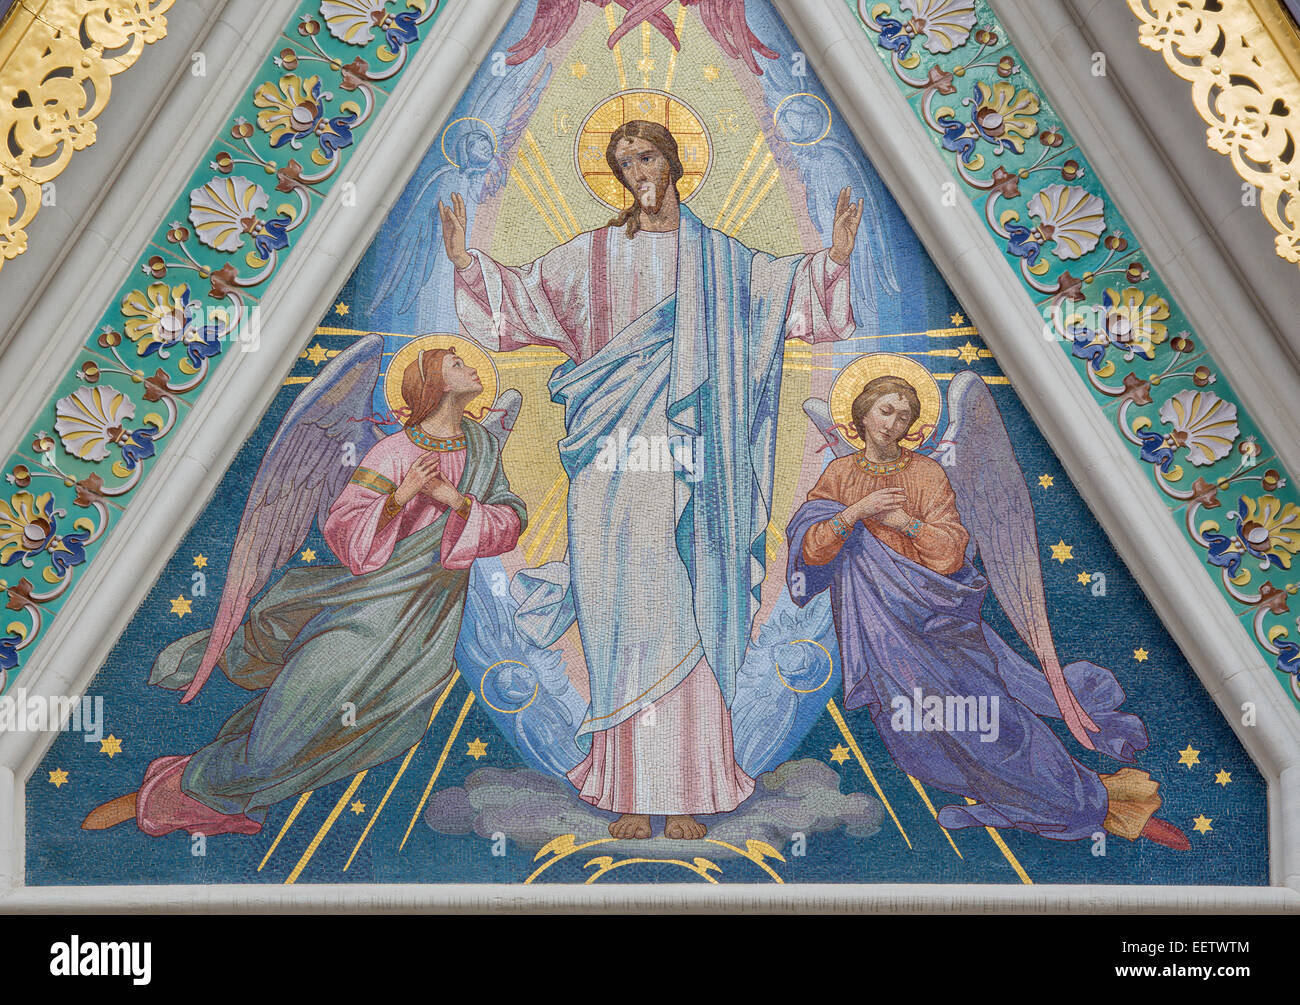 Vienna - Il mosaico di Gesù Cristo con gli angeli su la Chiesa russo-ortodossa Cattedrale di st. Nicholas. Foto Stock